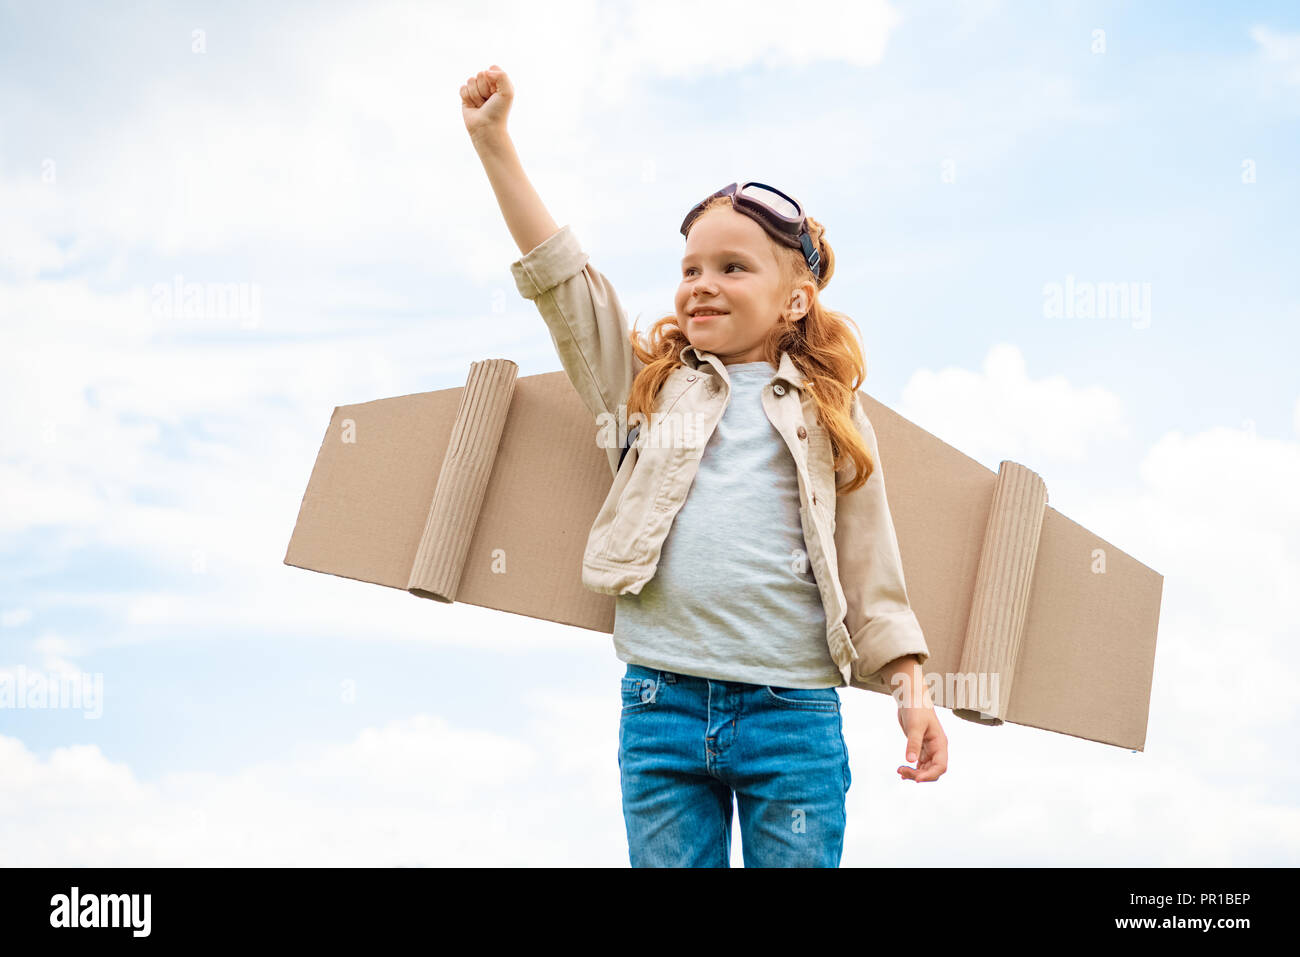 Porträt eines Kindes mit Paper Plane Flügel auf dem Rücken und schützende Brillen auf dem Kopf stehend mit ausgestrecktem Arm gegen den blauen bewölkten Himmel Stockfoto